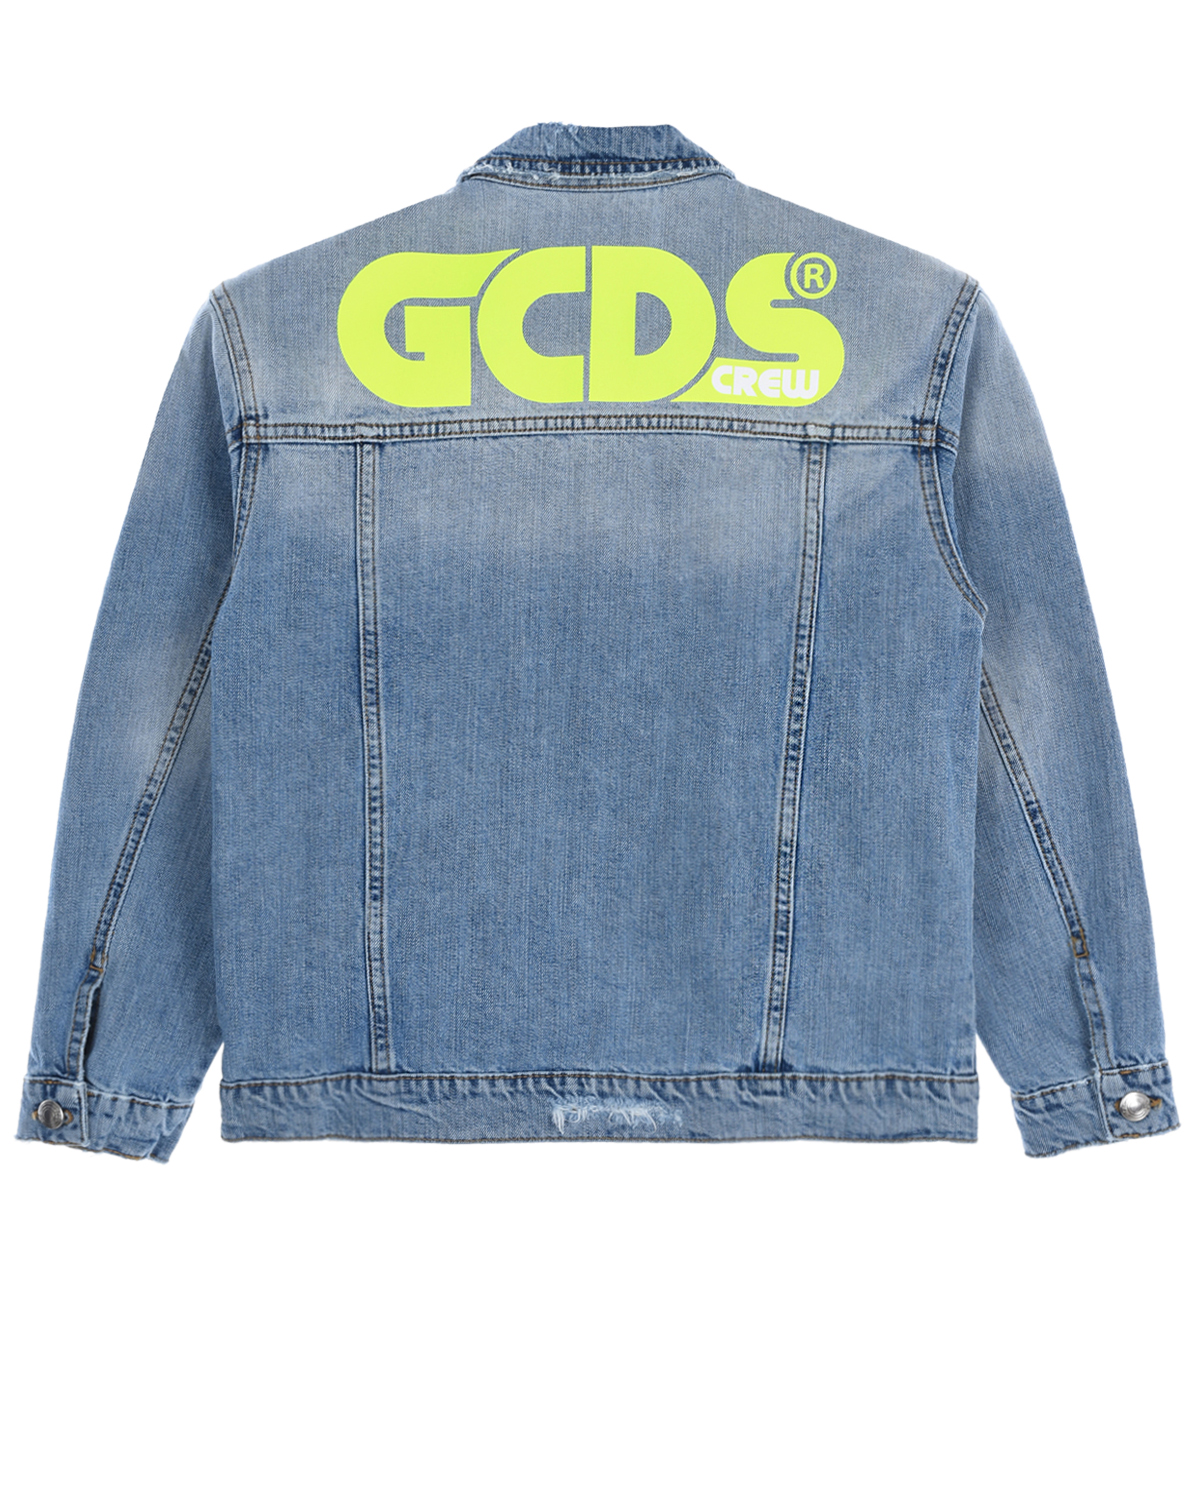 Джинсовая куртка с неоновым логотипом GCDS детская, размер 140, цвет нет цвета - фото 2